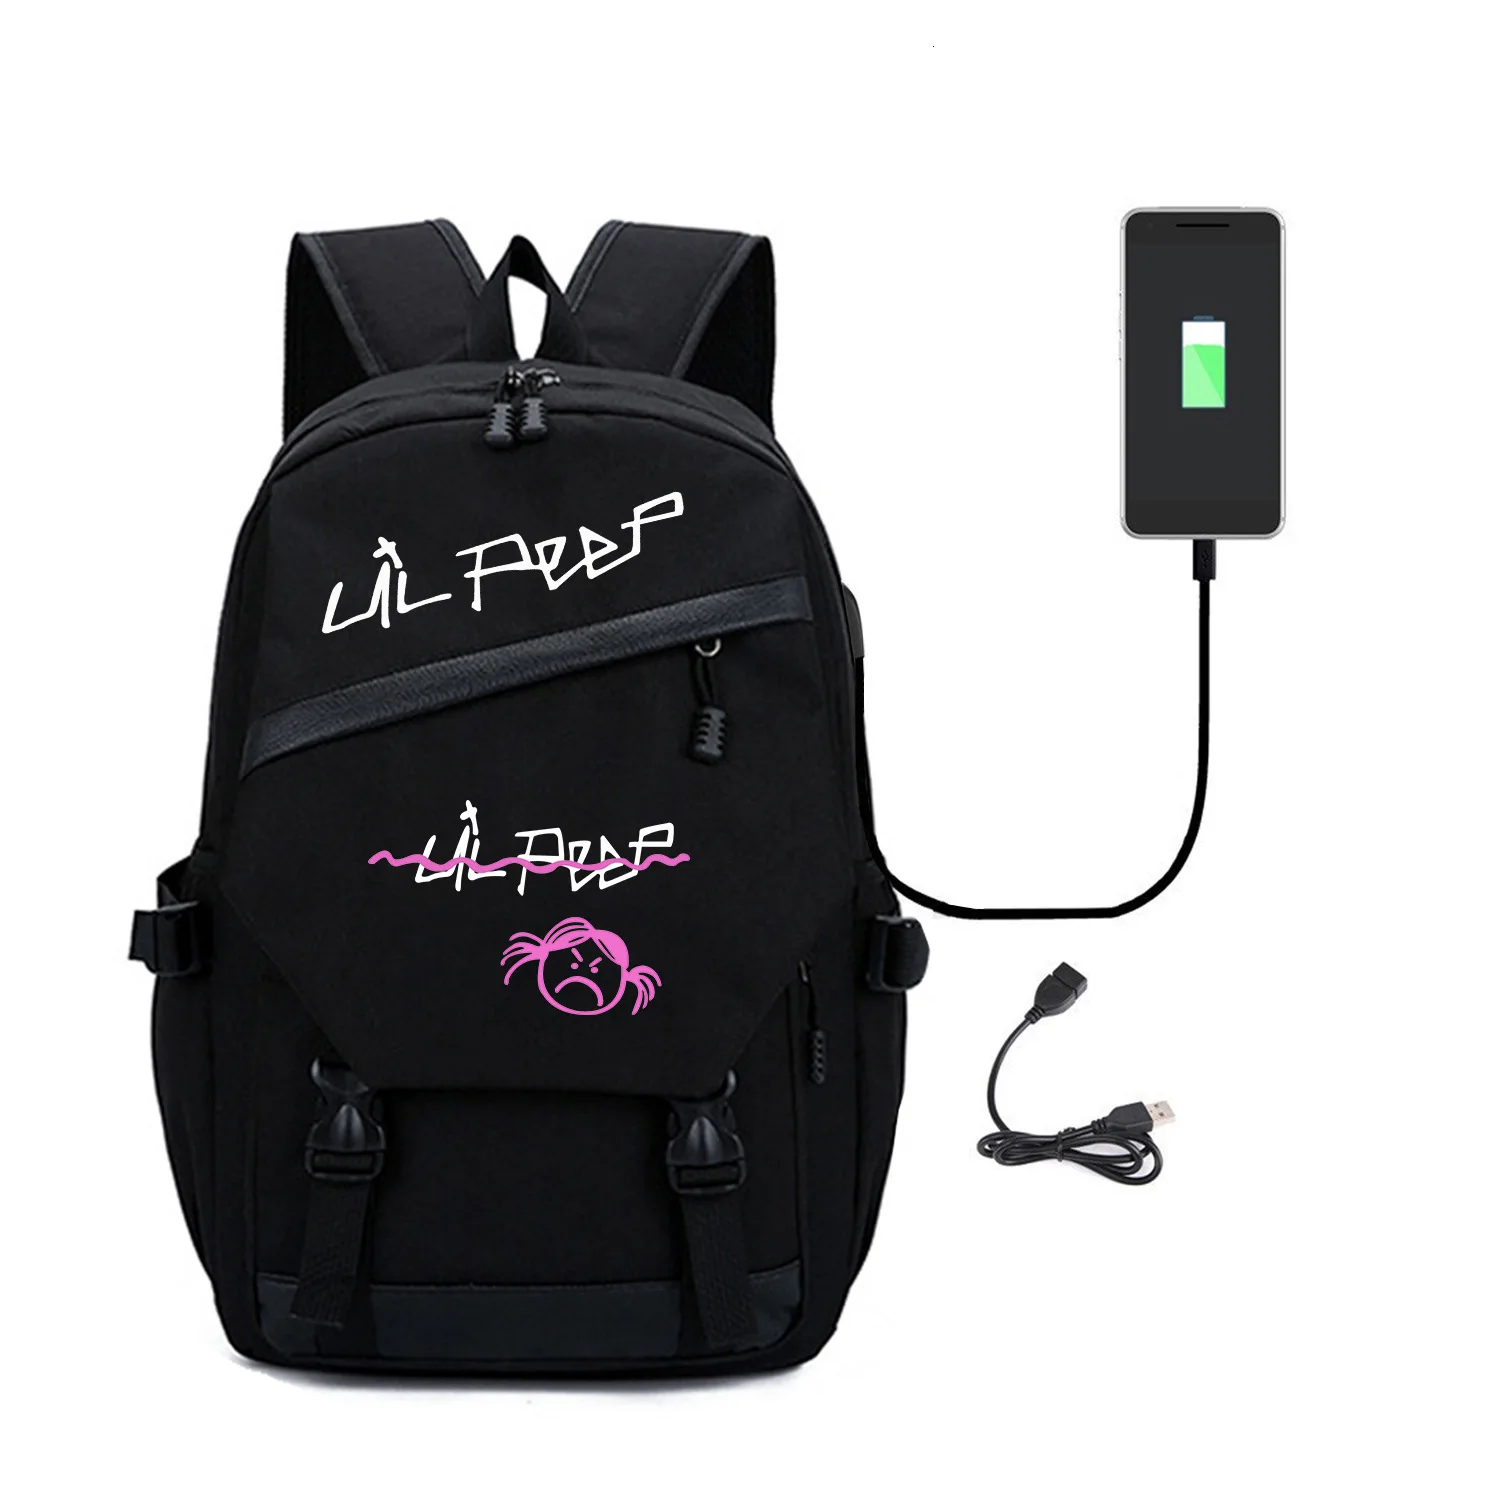 Lil Peep-mochila para hombre y mujer con puerto de carga USB, bolso de lona para ordenador portátil, bolso para auriculares